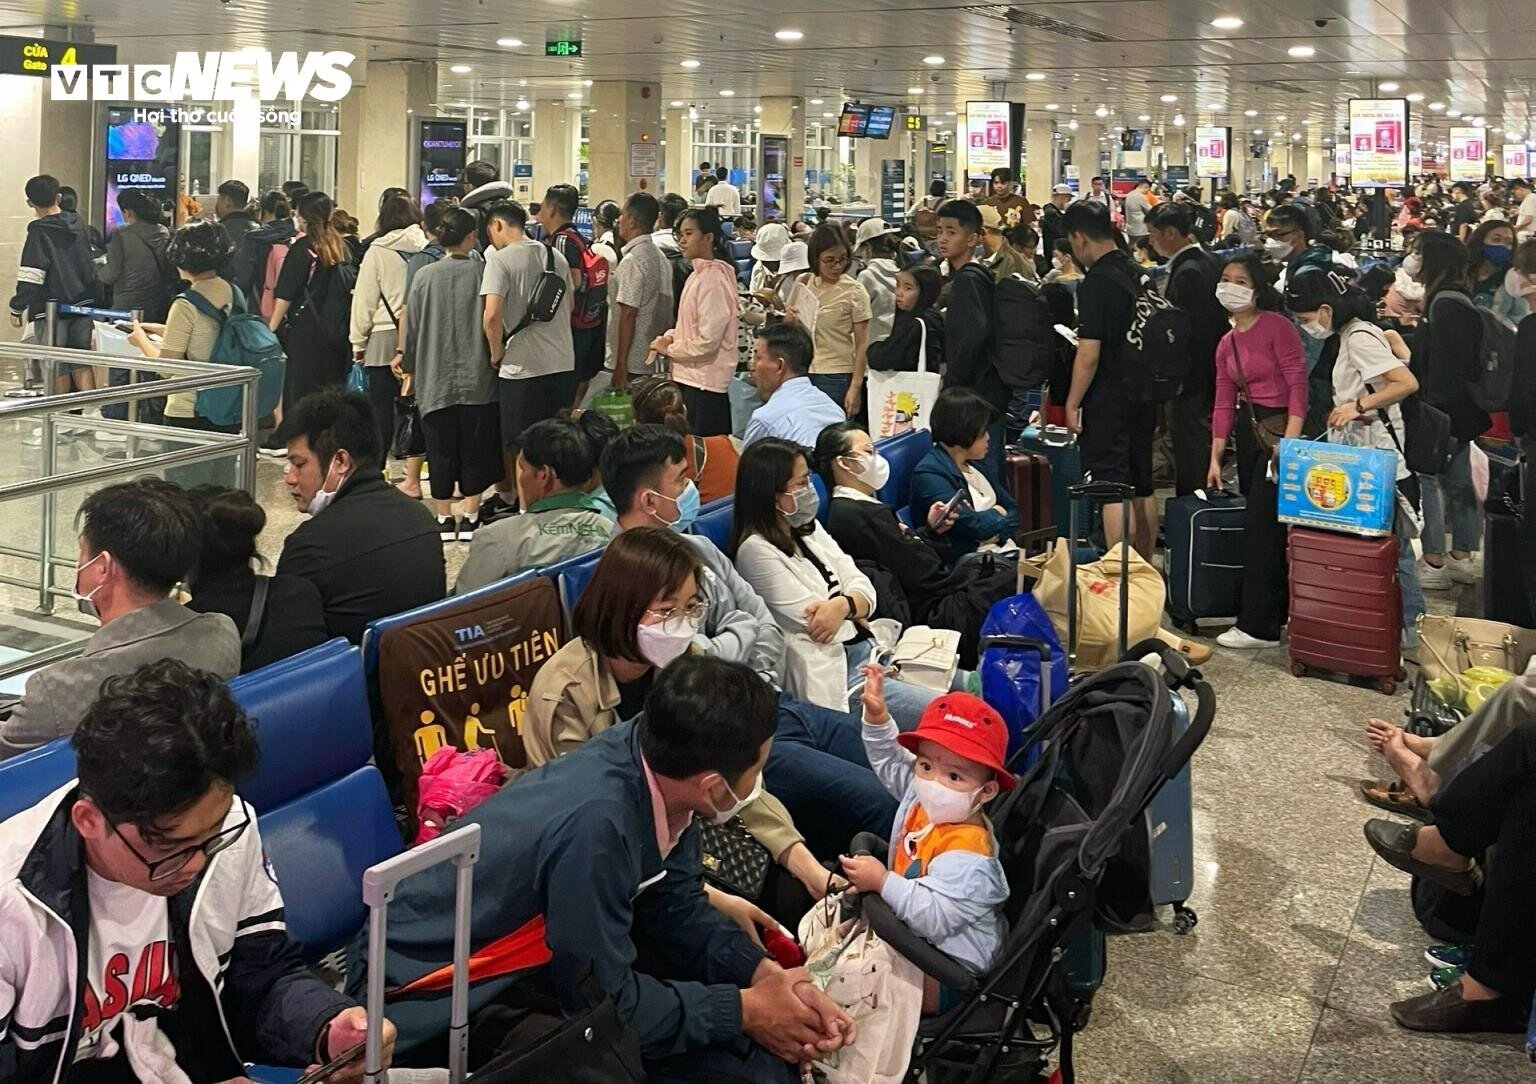 Sân bay Tân Sơn Nhất chật kín người, hành khách mệt mỏi vì chờ đợi - 3